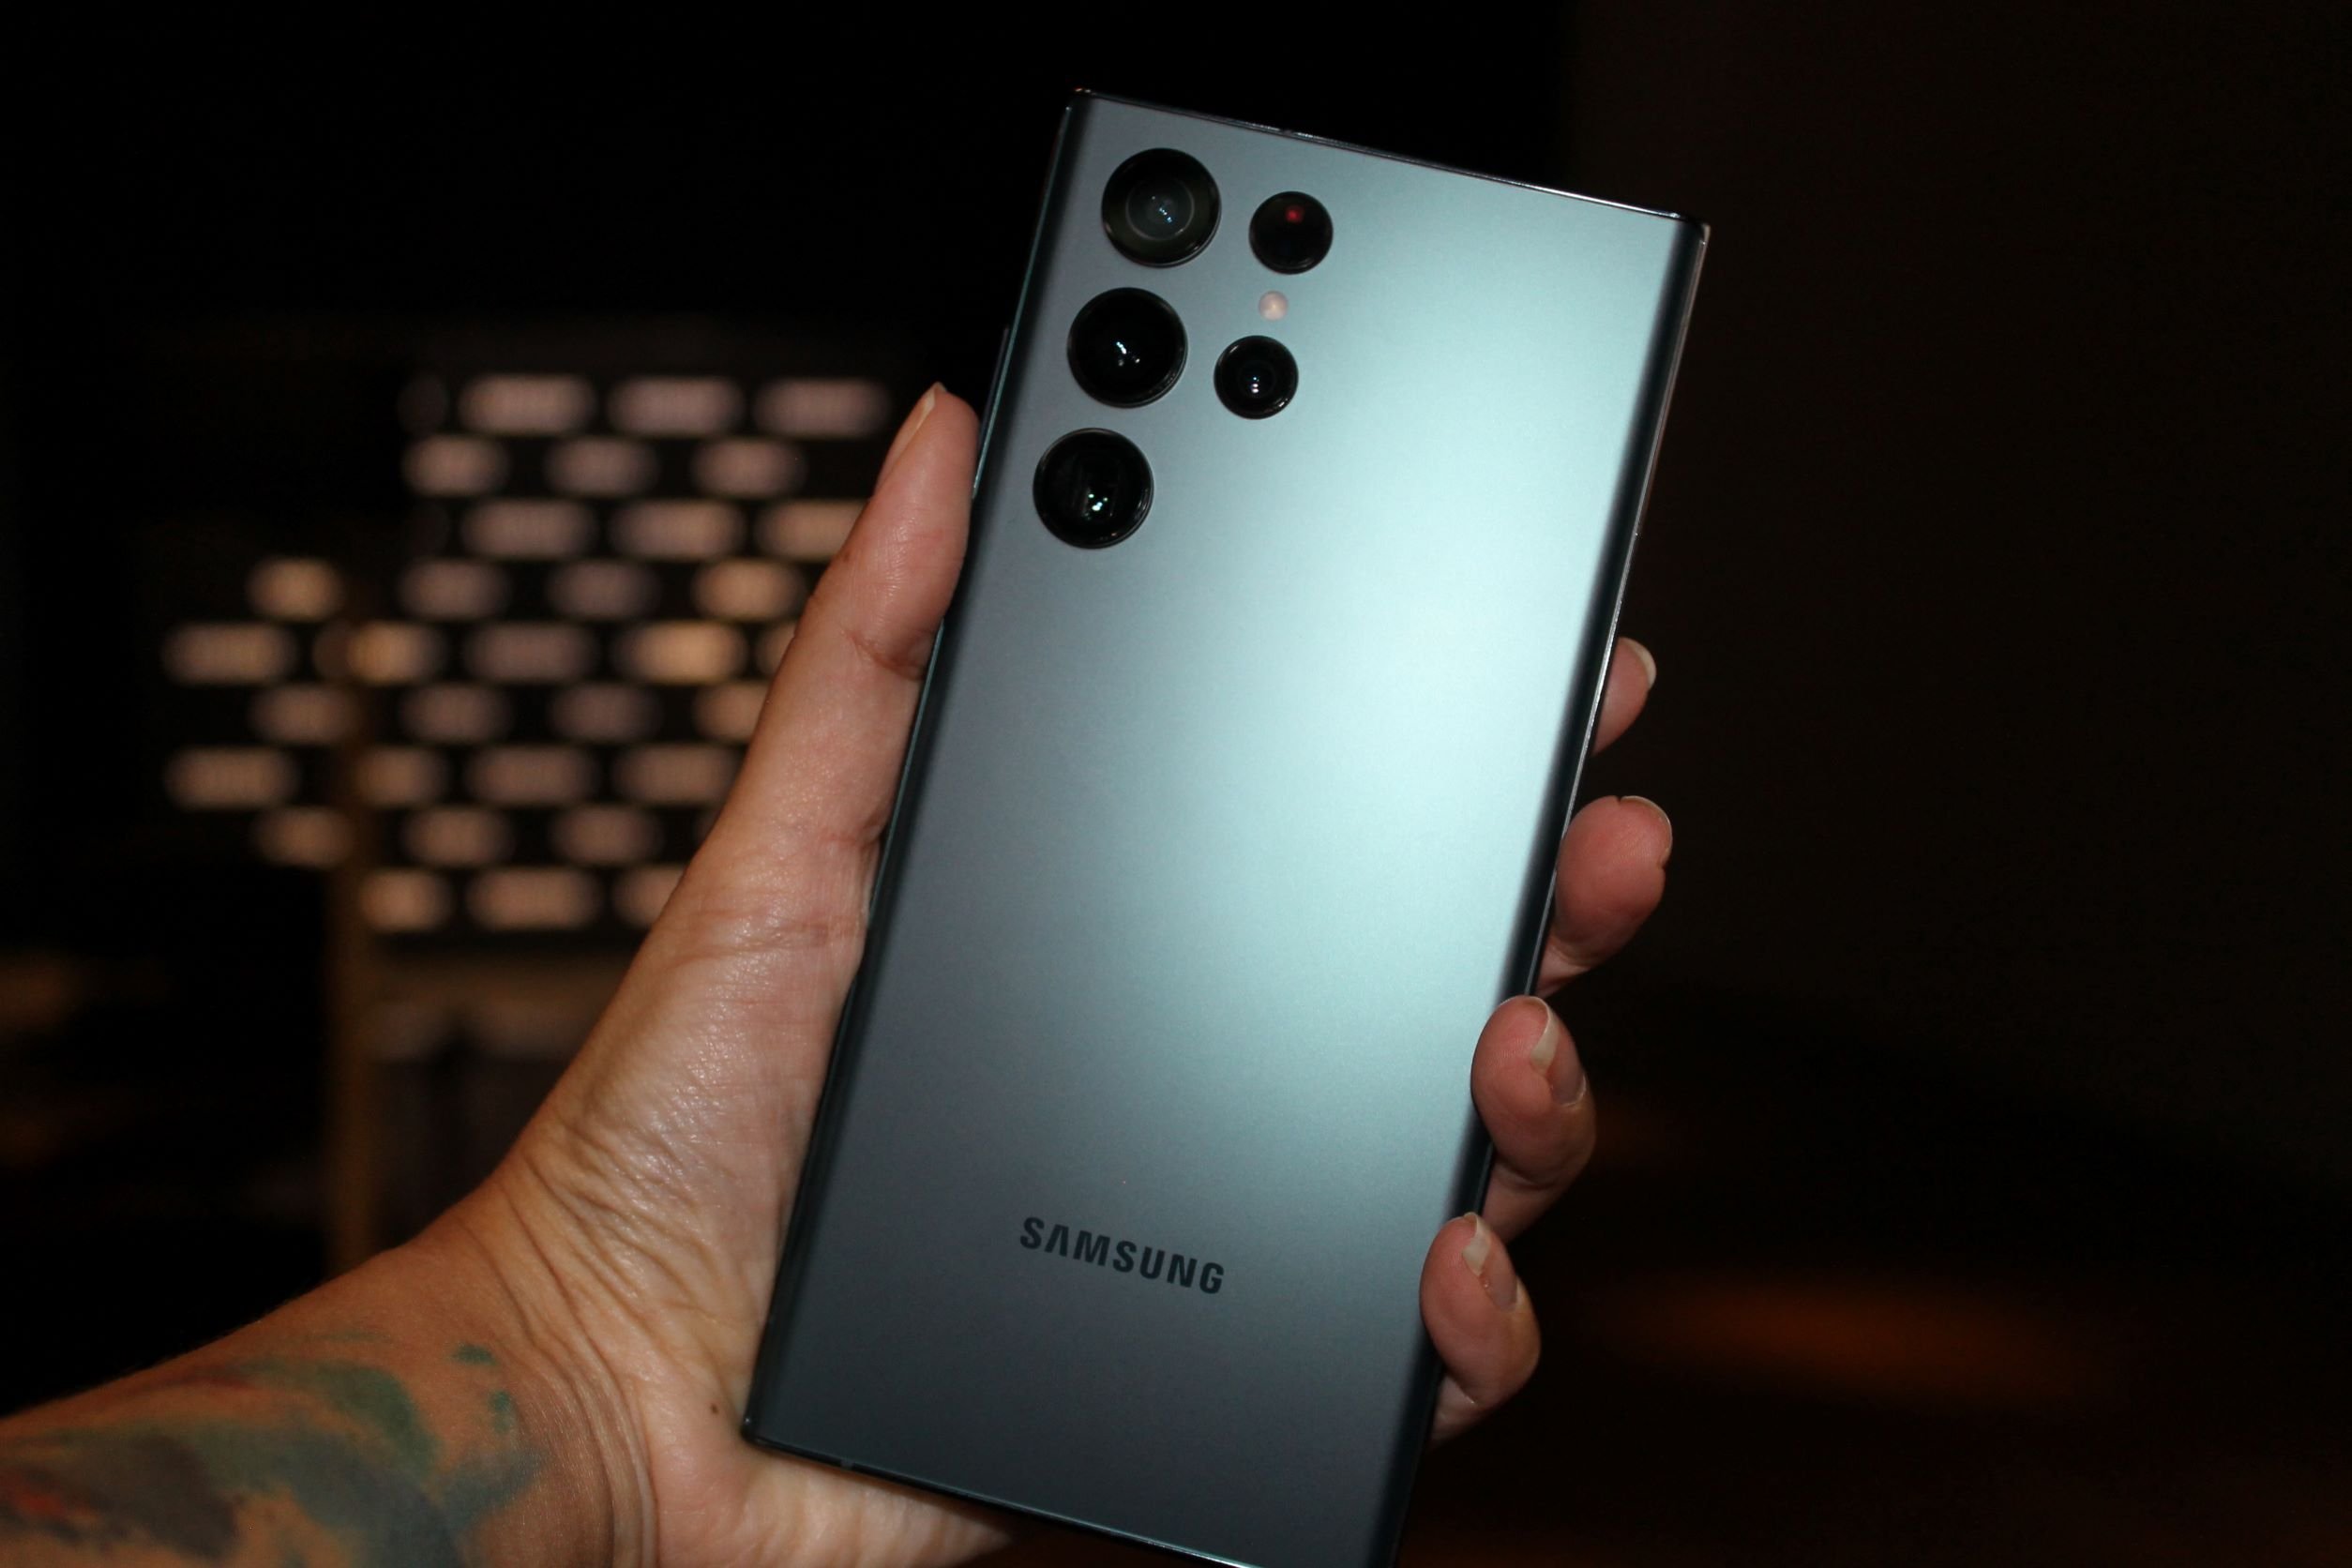 USADO: Samsung Galaxy Note 9 Preto Bom KaBuM